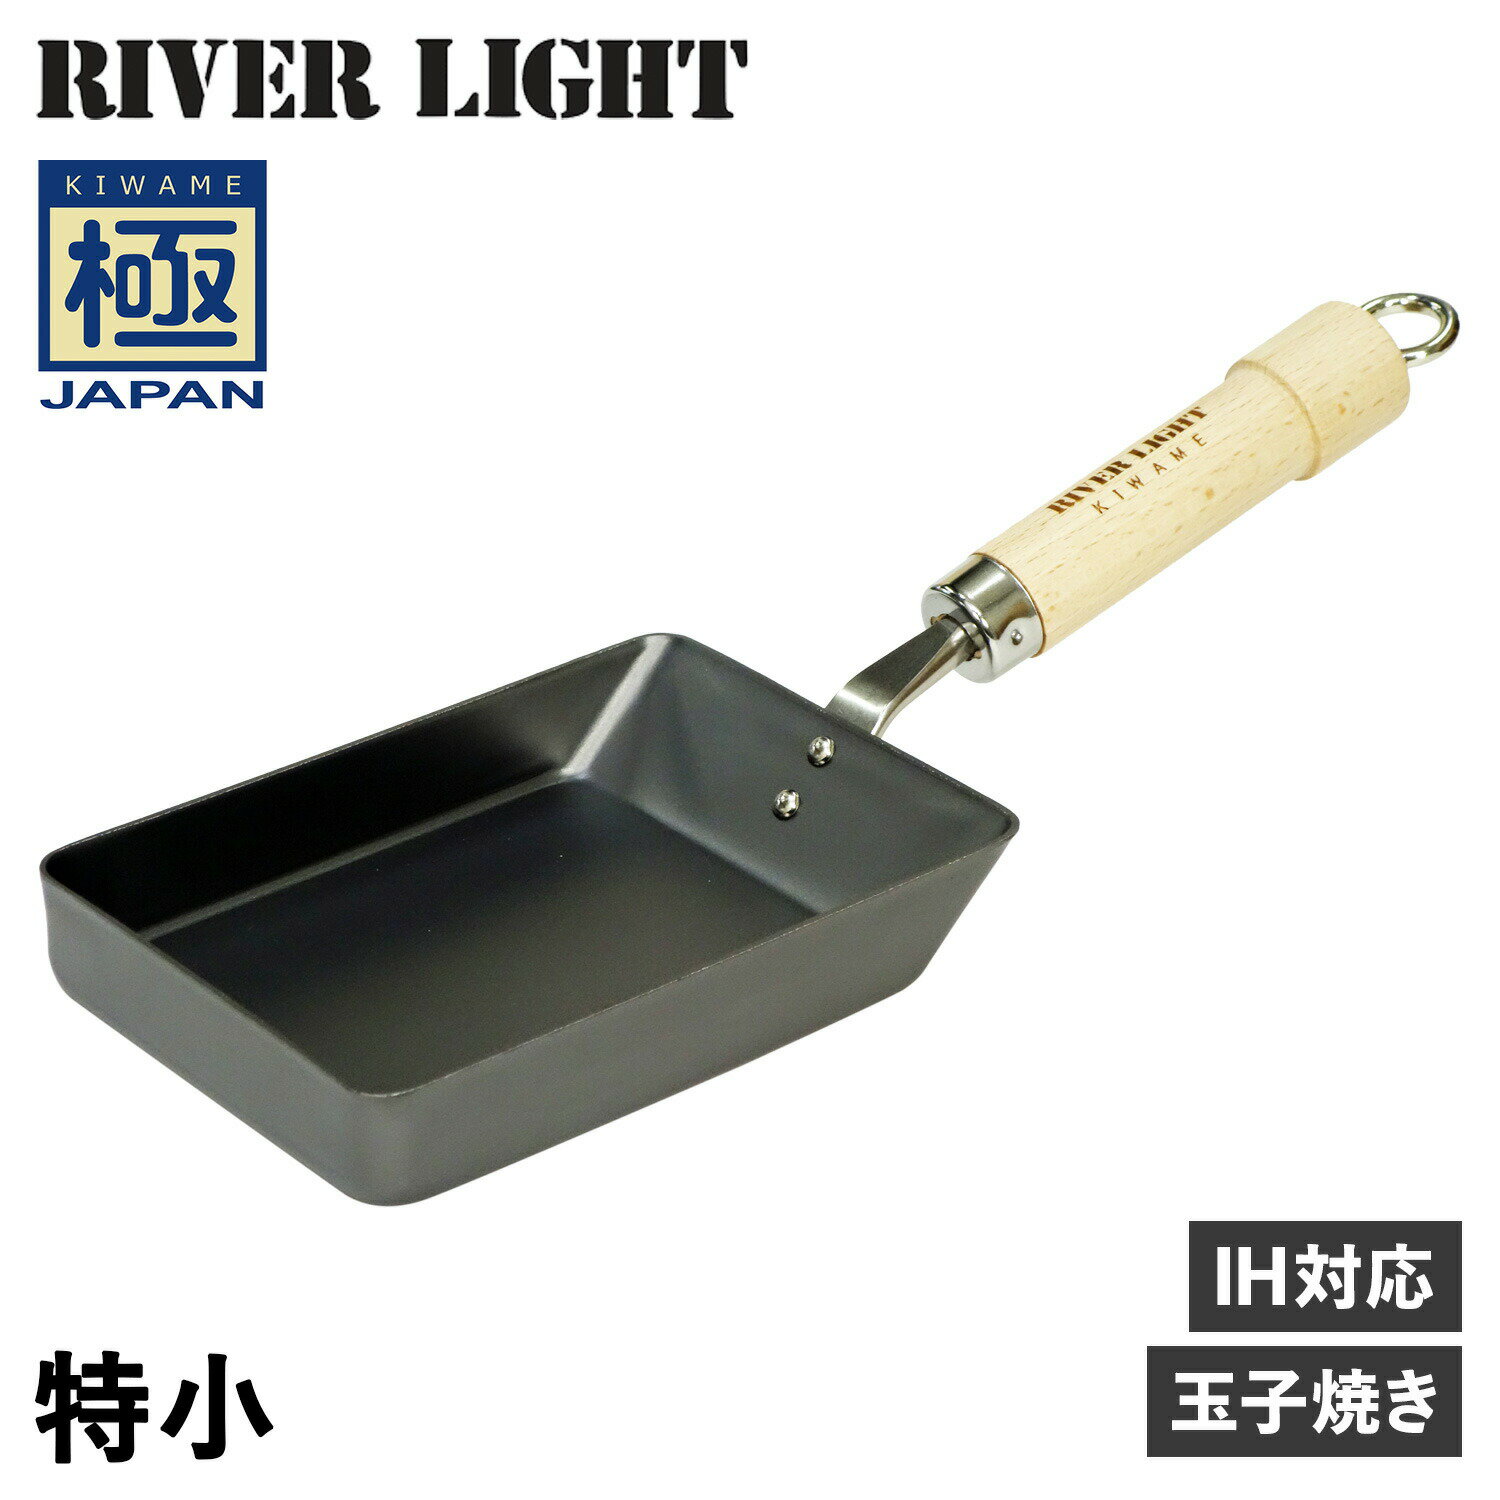 RIVER LIGHT 極JAPAN リバーライト 極 卵焼き器 フライパン 特小 IH ガス対応 小さい 鉄 J1611 アウトドア